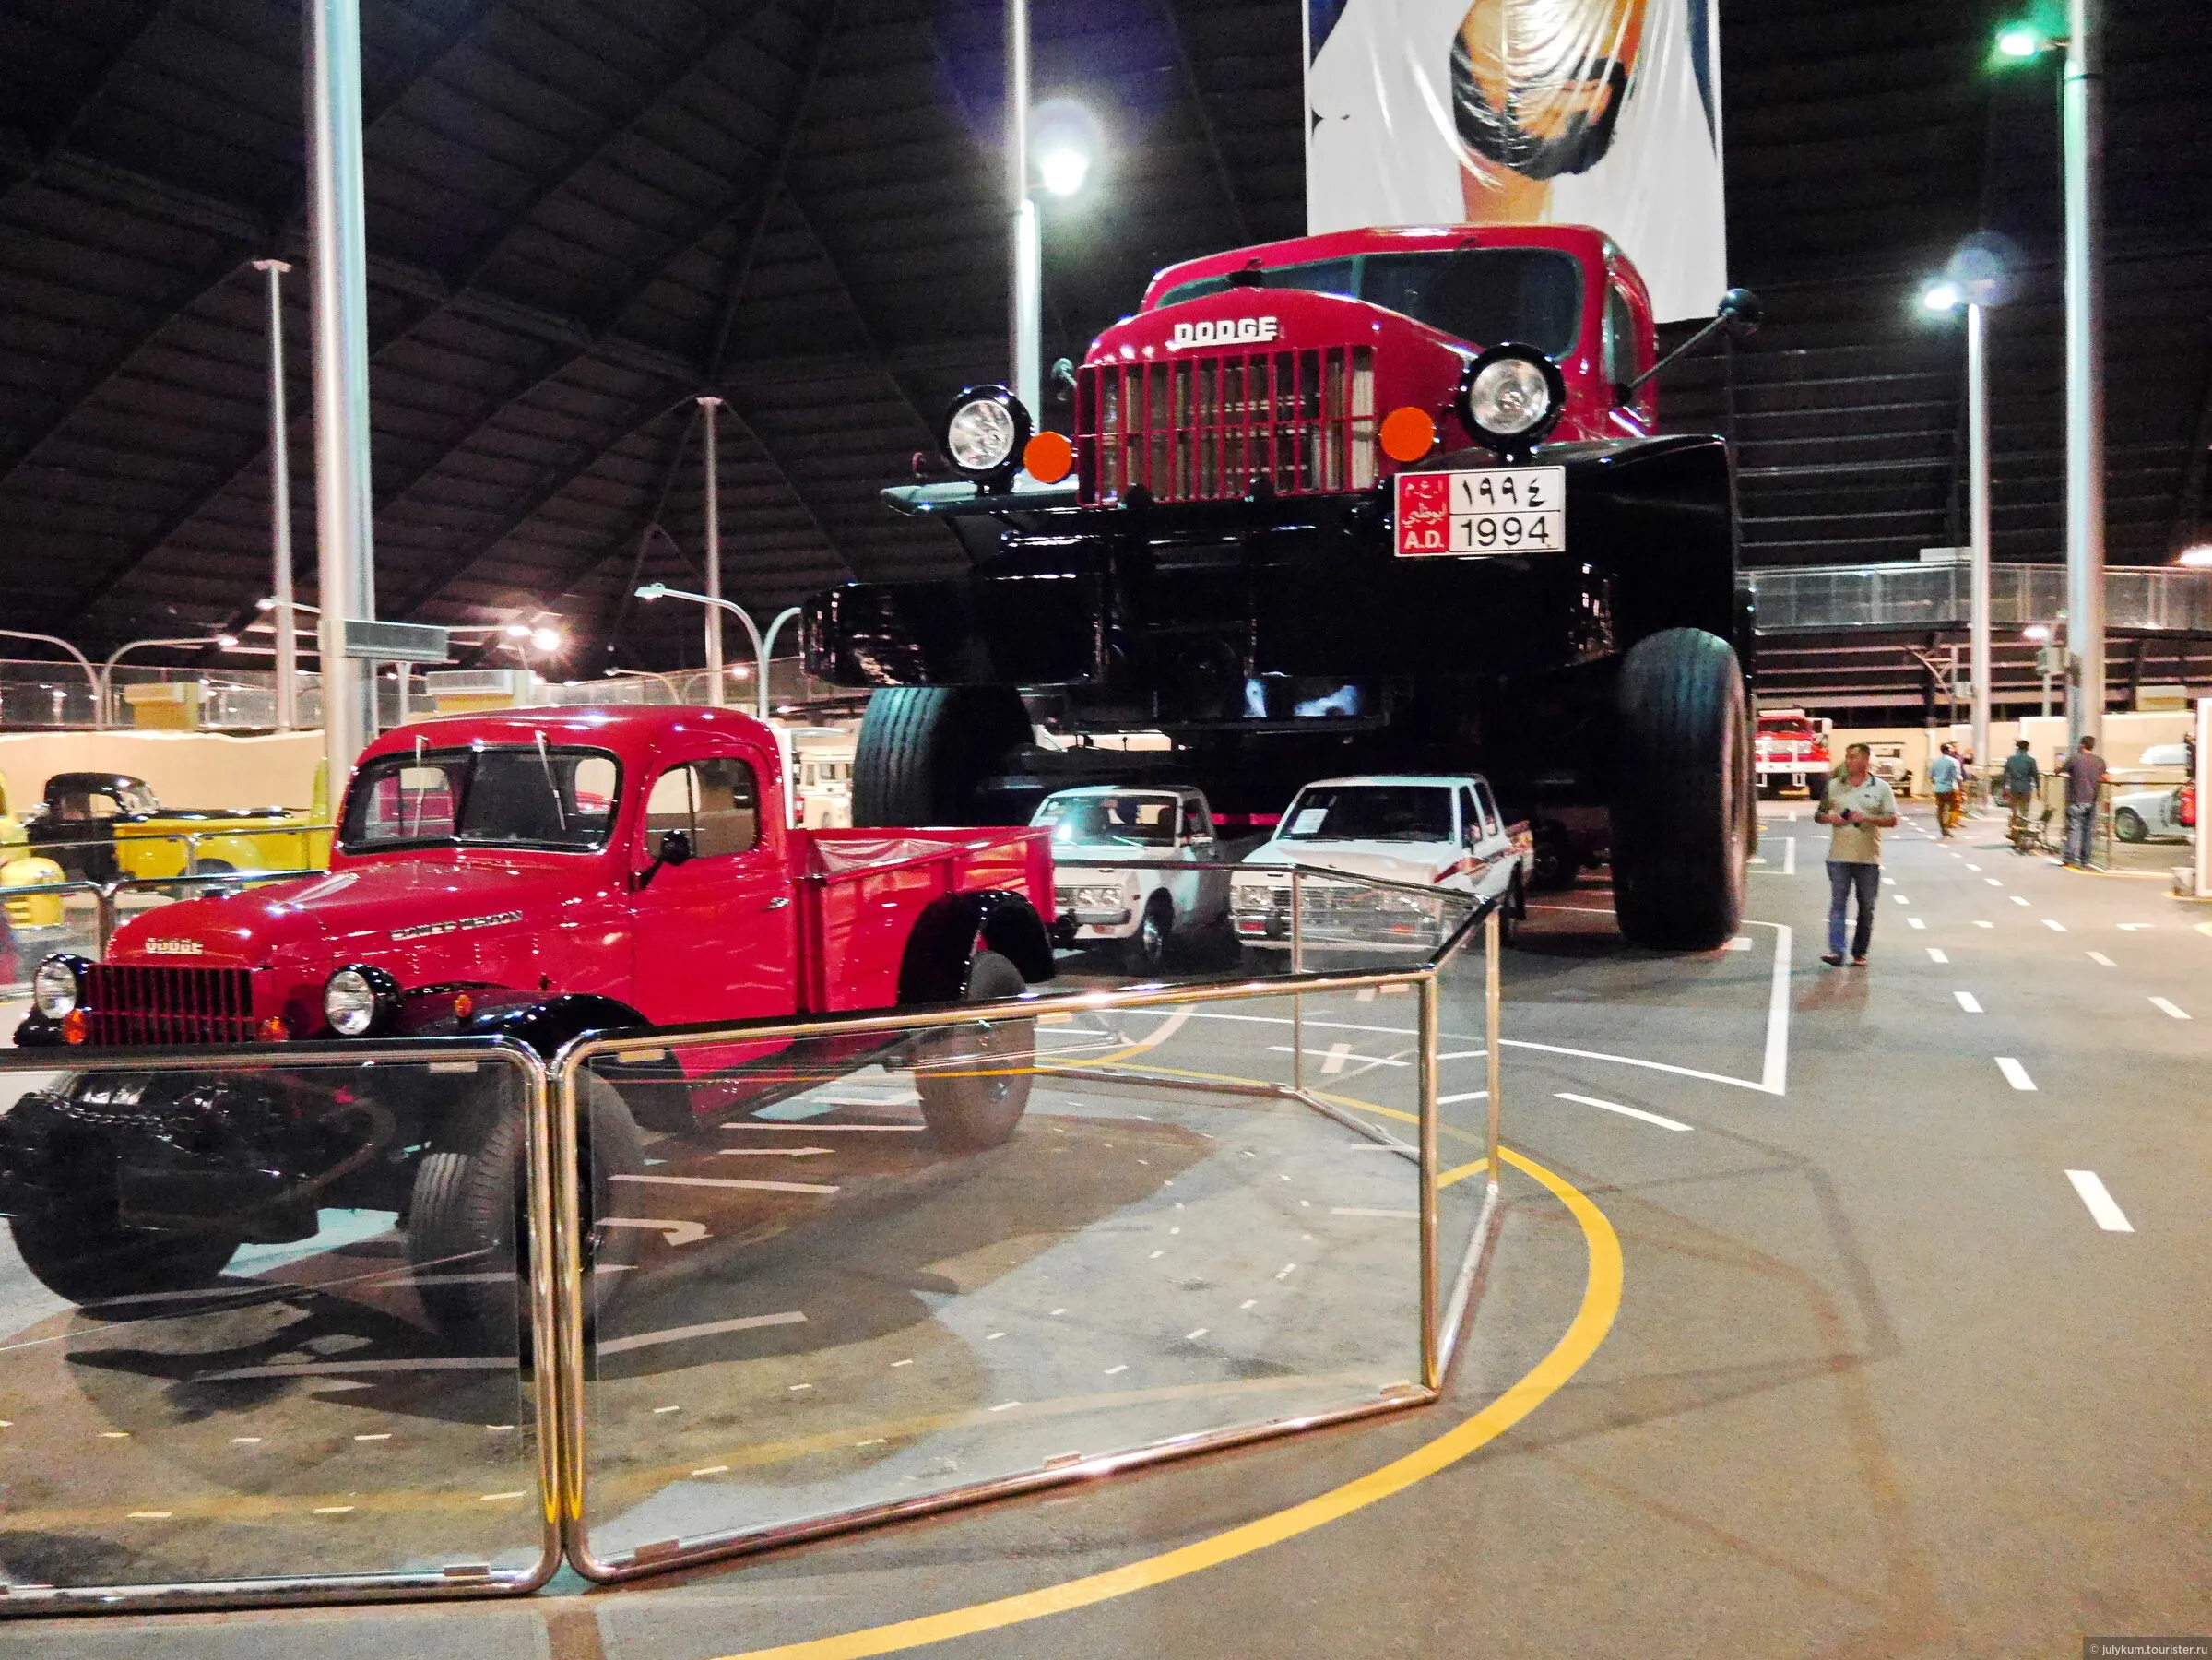 Дубайский автомобильный музей - музей с коллекцией раритетных автомобилей и мотоциклов.